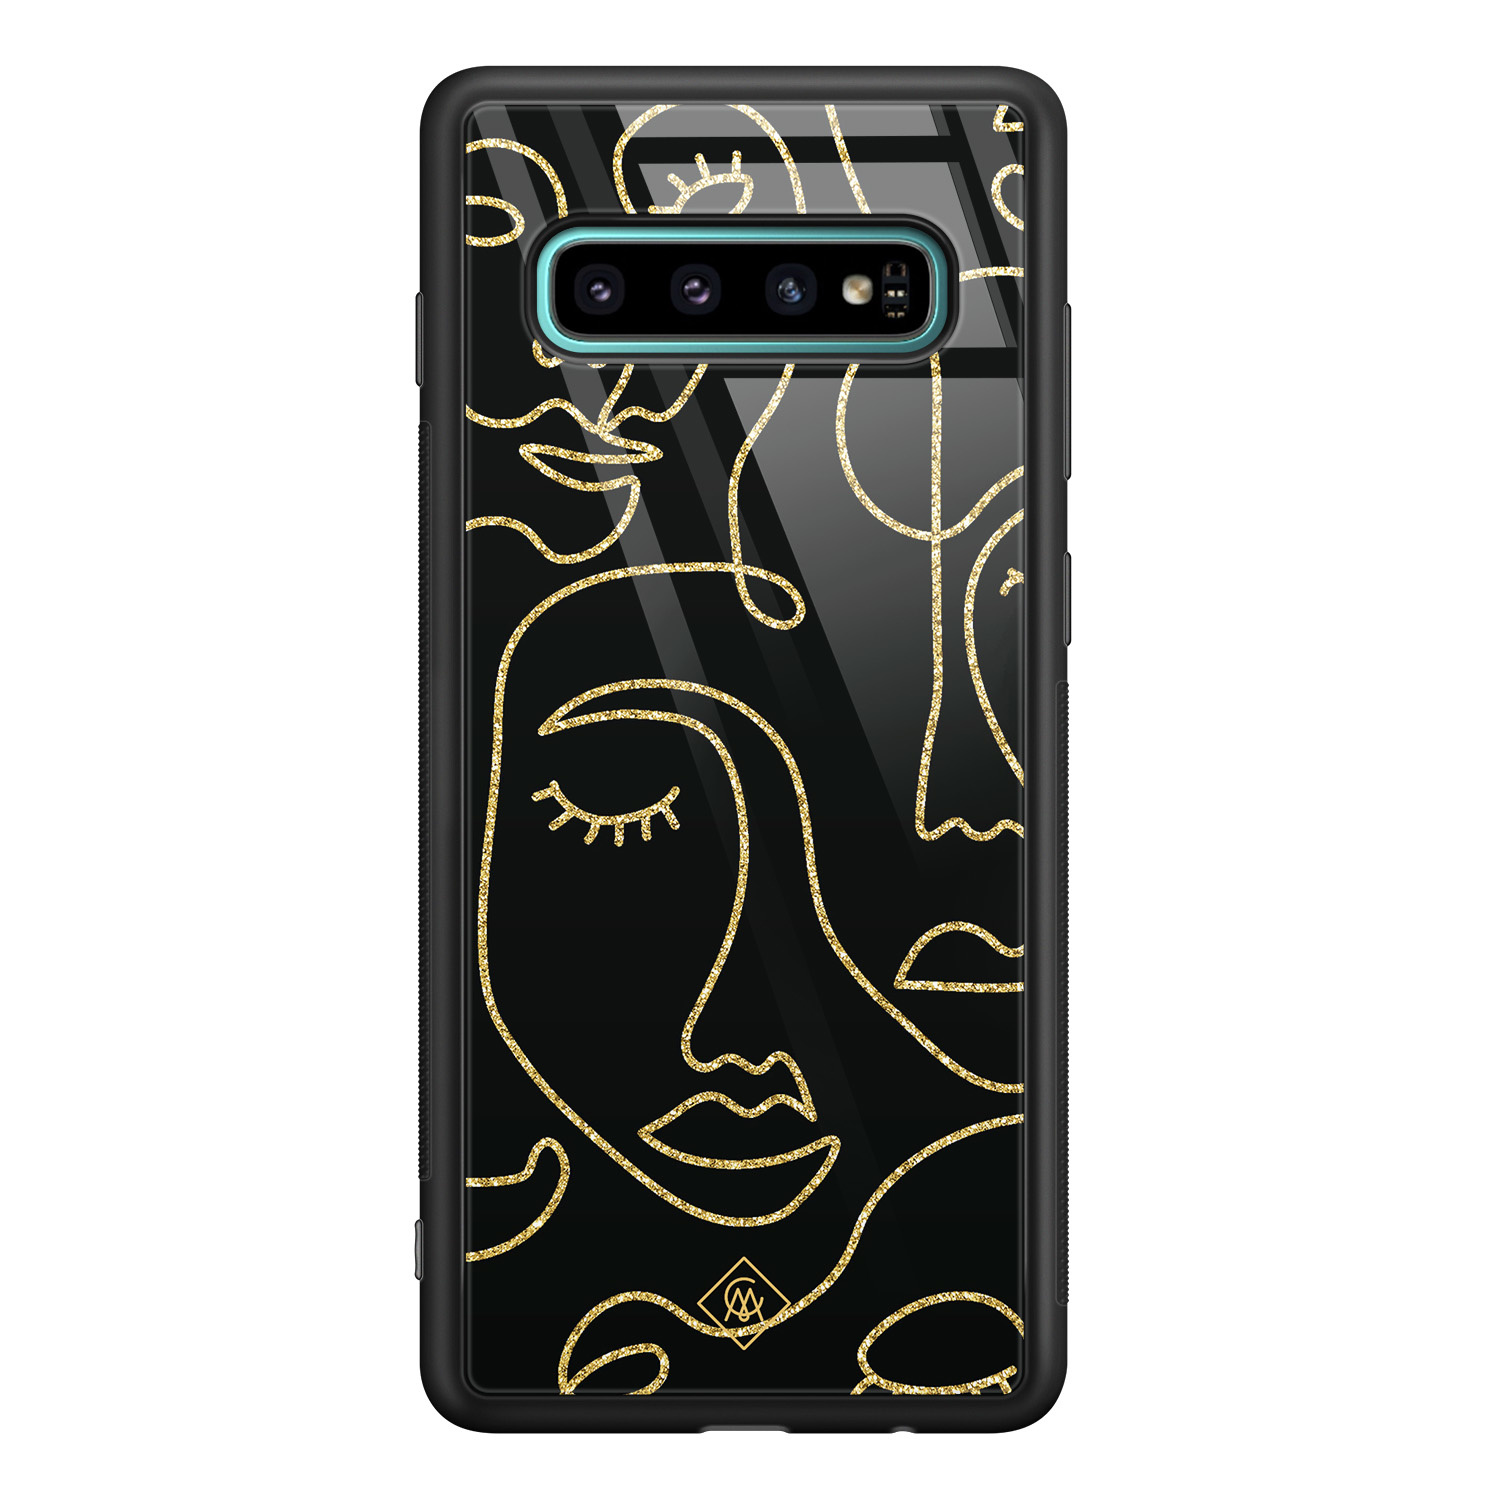 Samsung Galaxy S10 Plus glazen hardcase - Abstract faces - Casimoda.nl